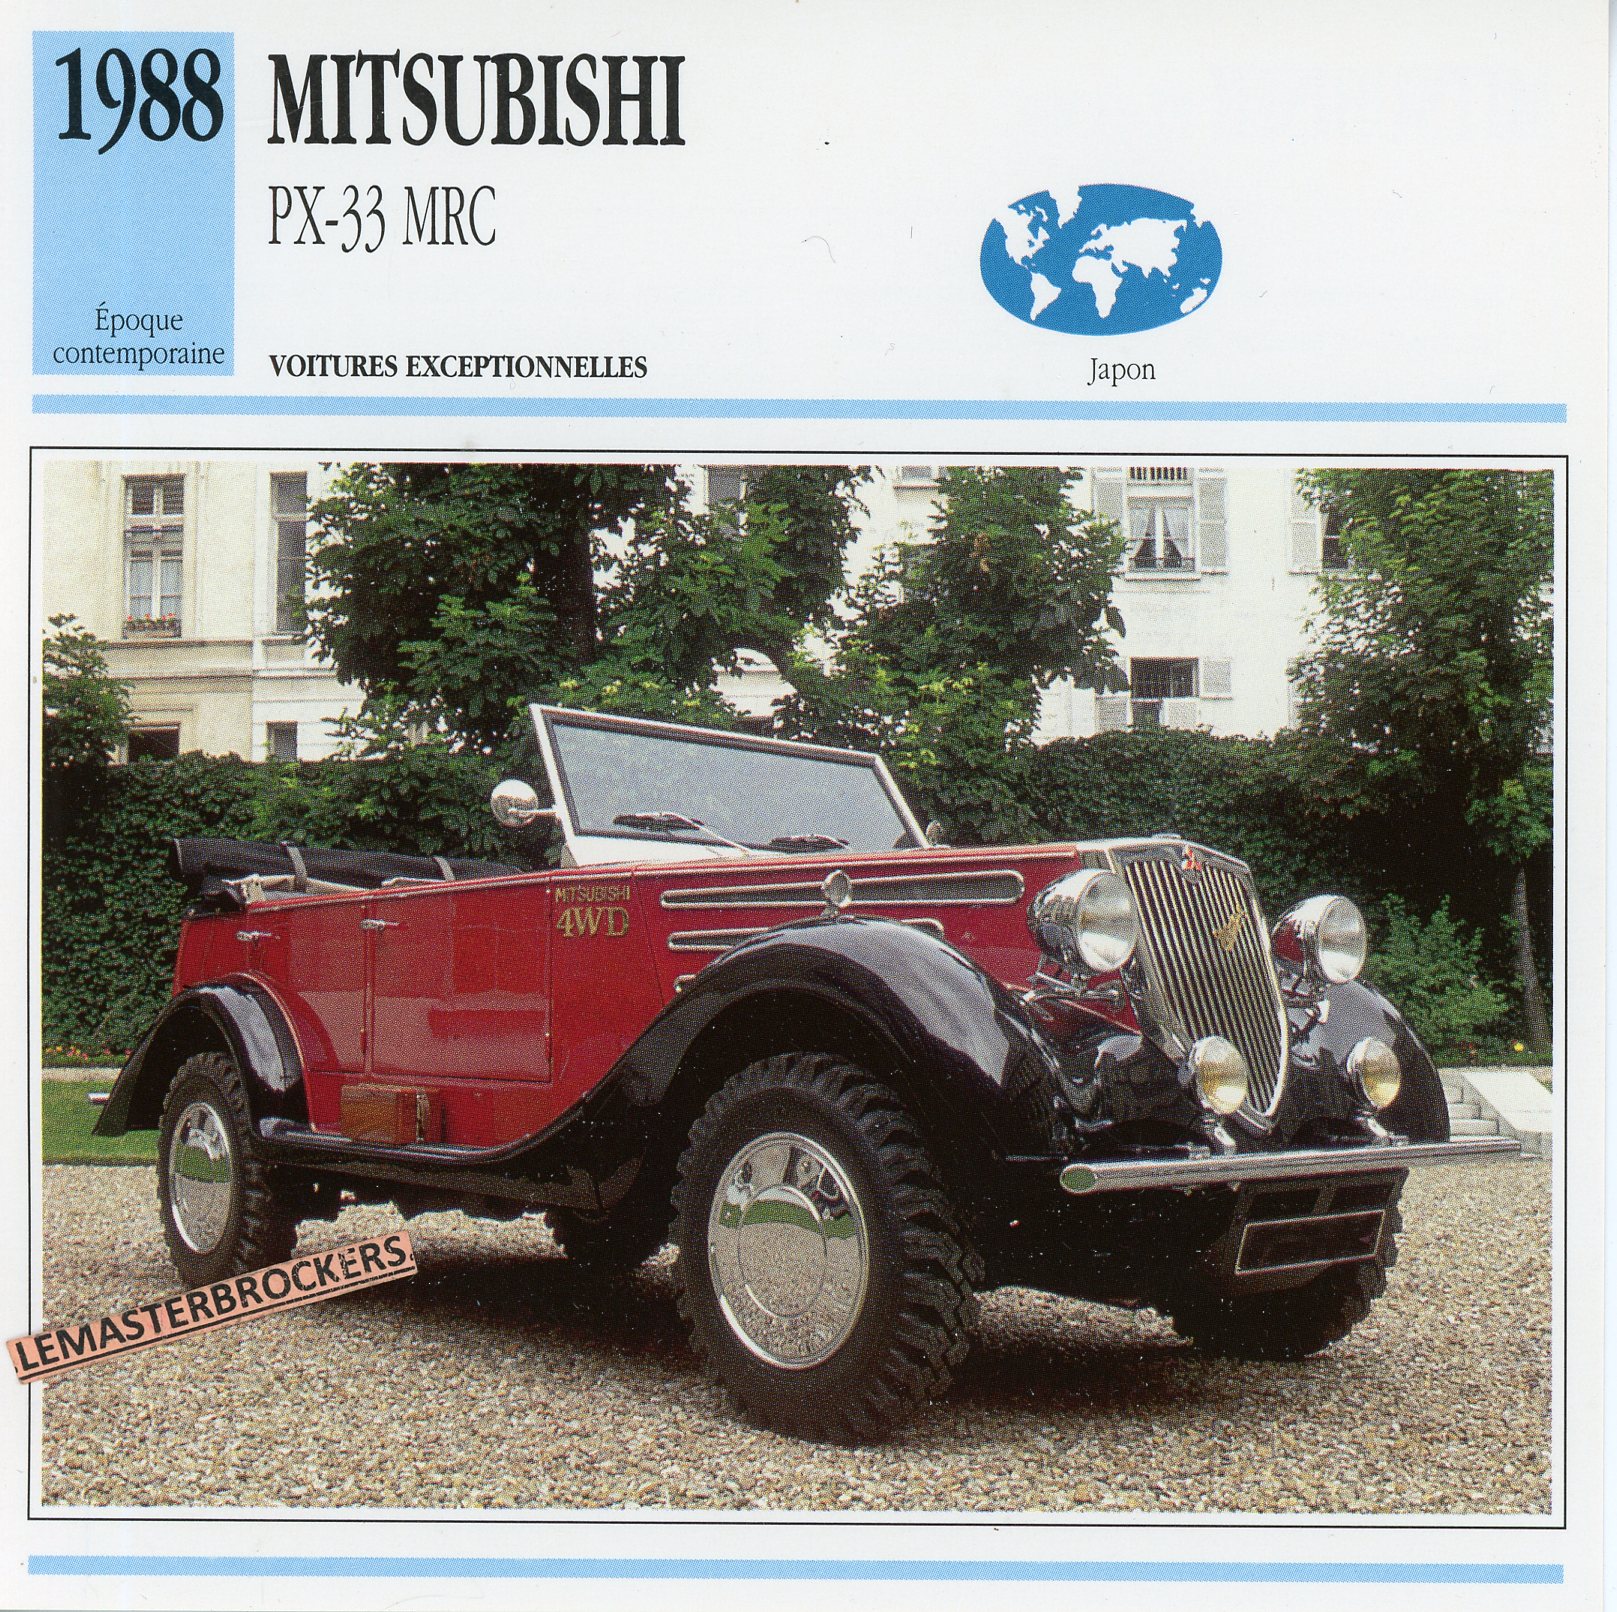 MITSUBISHI-PX-33-PX33-MRC-1988-FICHE-AUTO-LEMASTERBROCKERS